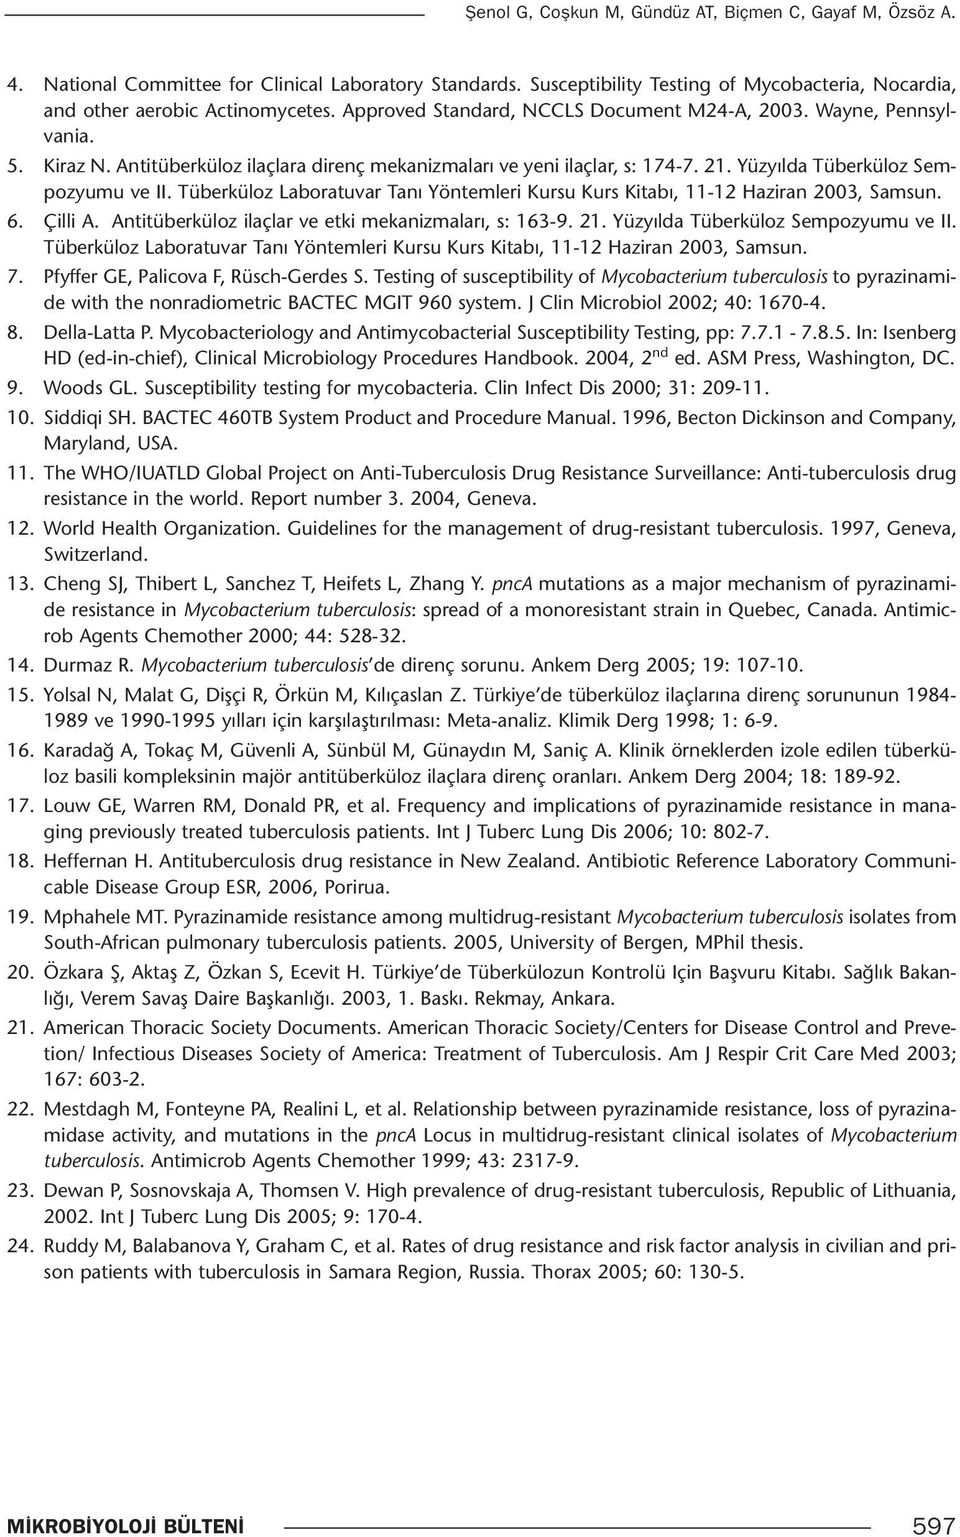 Tüberküloz Laboratuvar Tanı Yöntemleri Kursu Kurs Kitabı, 11-12 Haziran 2003, Samsun. 6. Çilli A. Antitüberküloz ilaçlar ve etki mekanizmaları, s: 163-9. 21. Yüzyılda Tüberküloz Sempozyumu ve II.